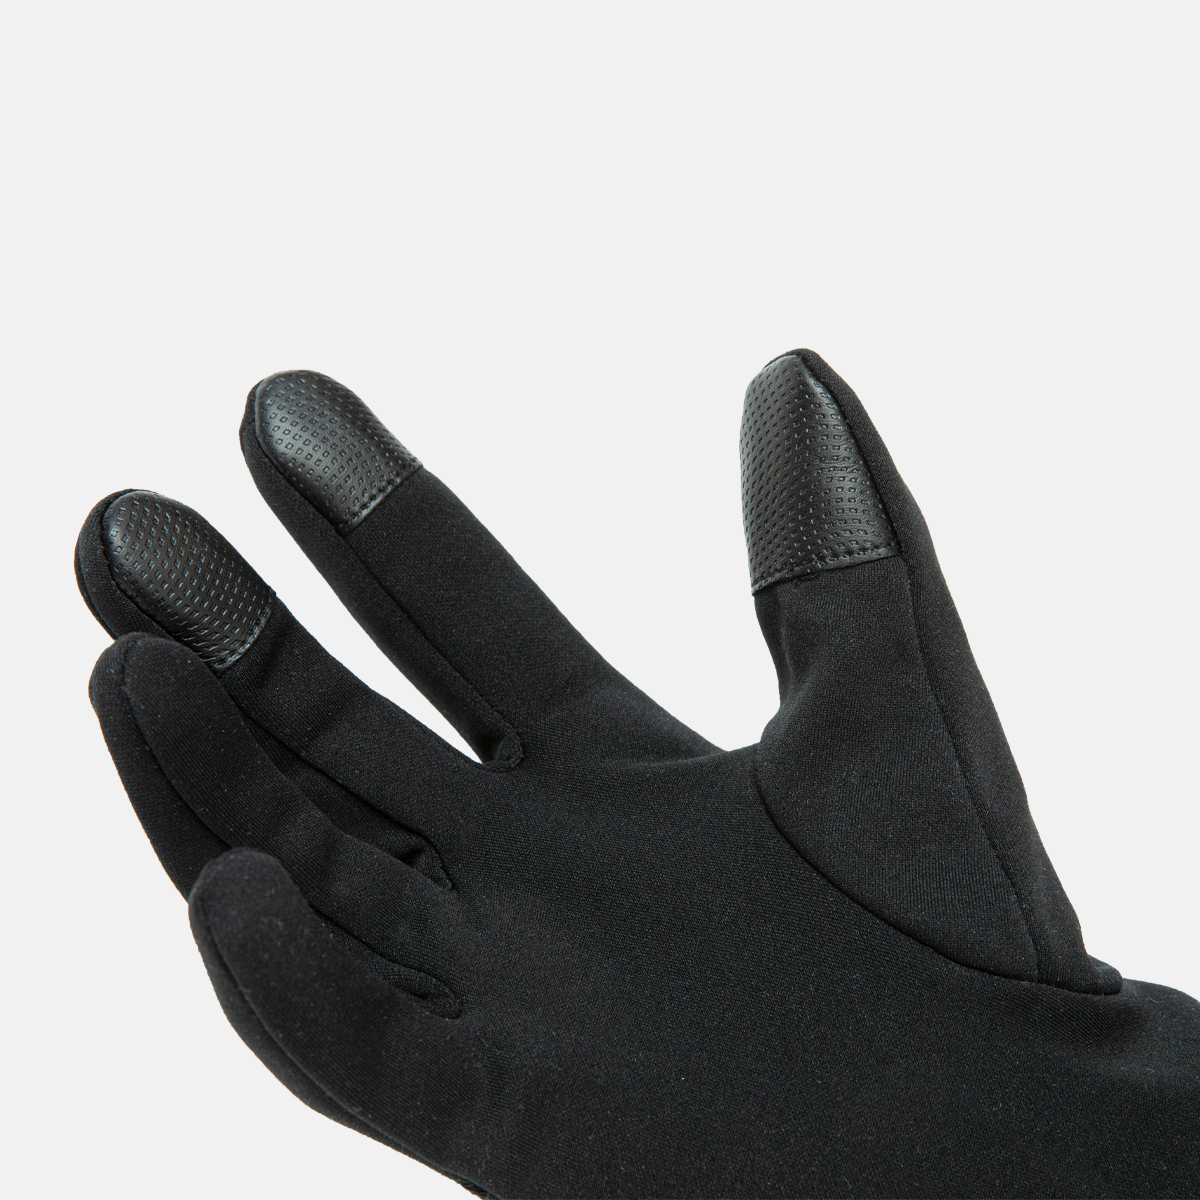  gants unisexes noirs i ghent